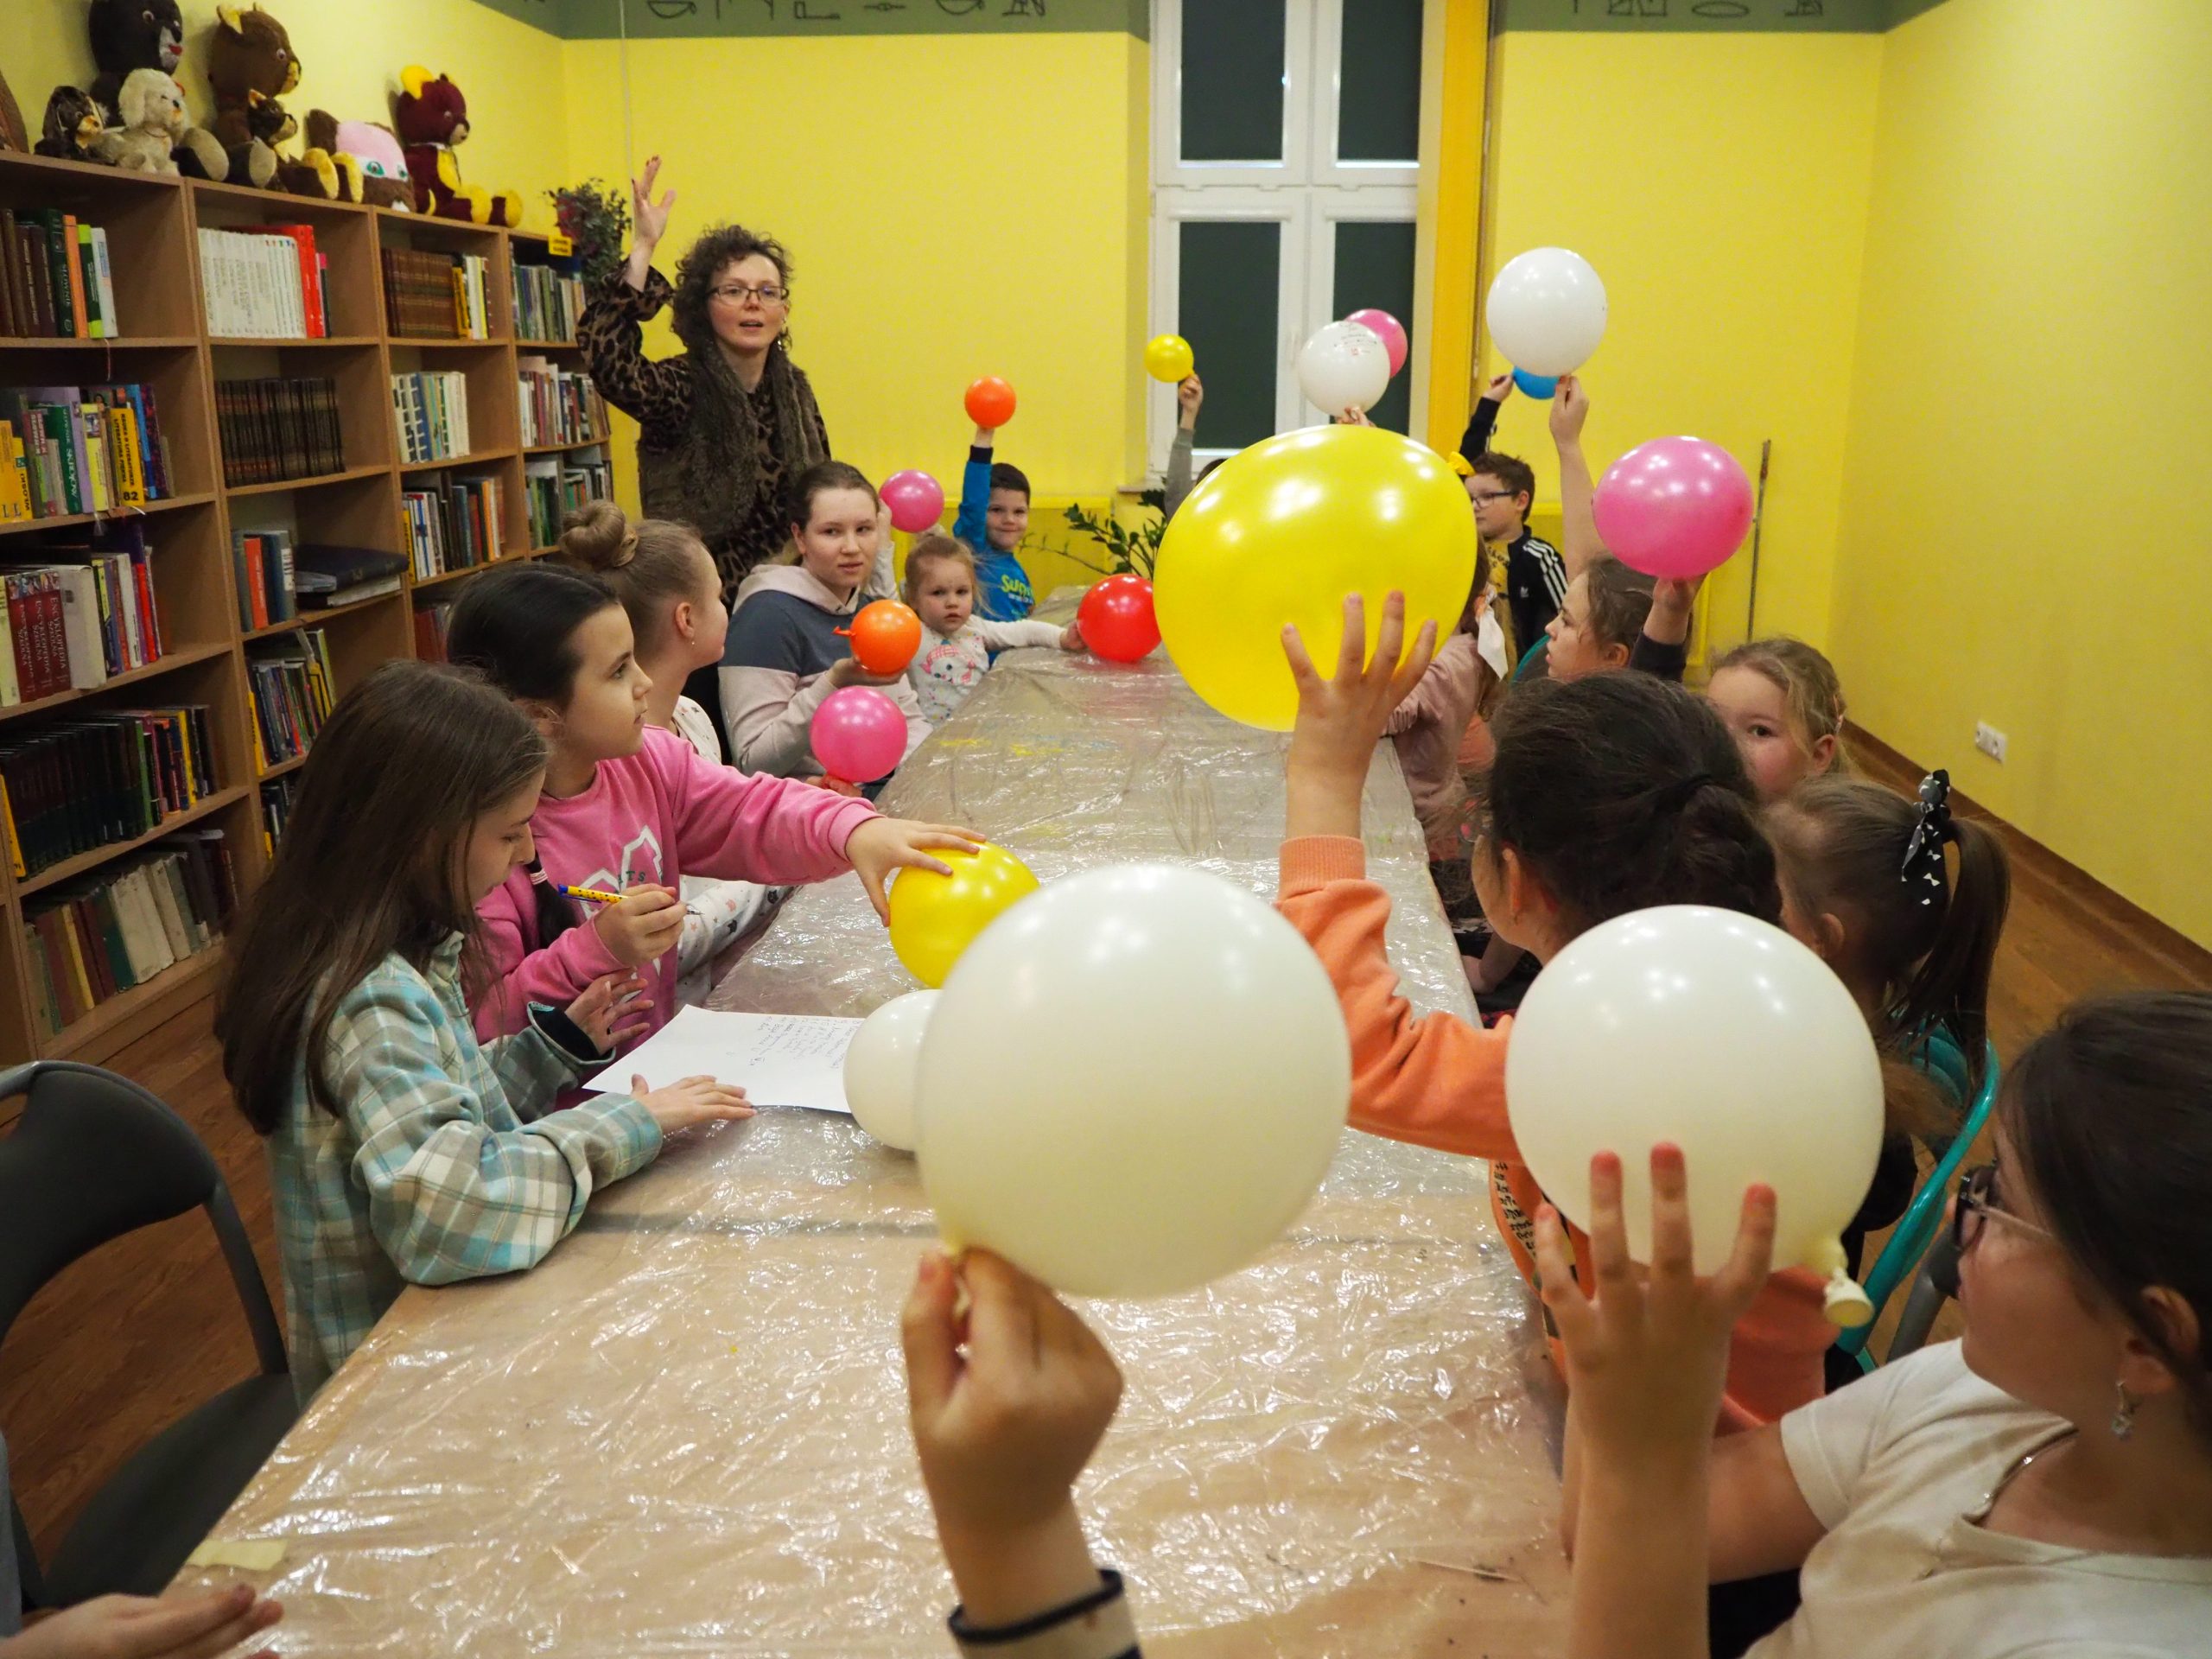 grupa dzieci przy stole unosi do góry kolorowe balony